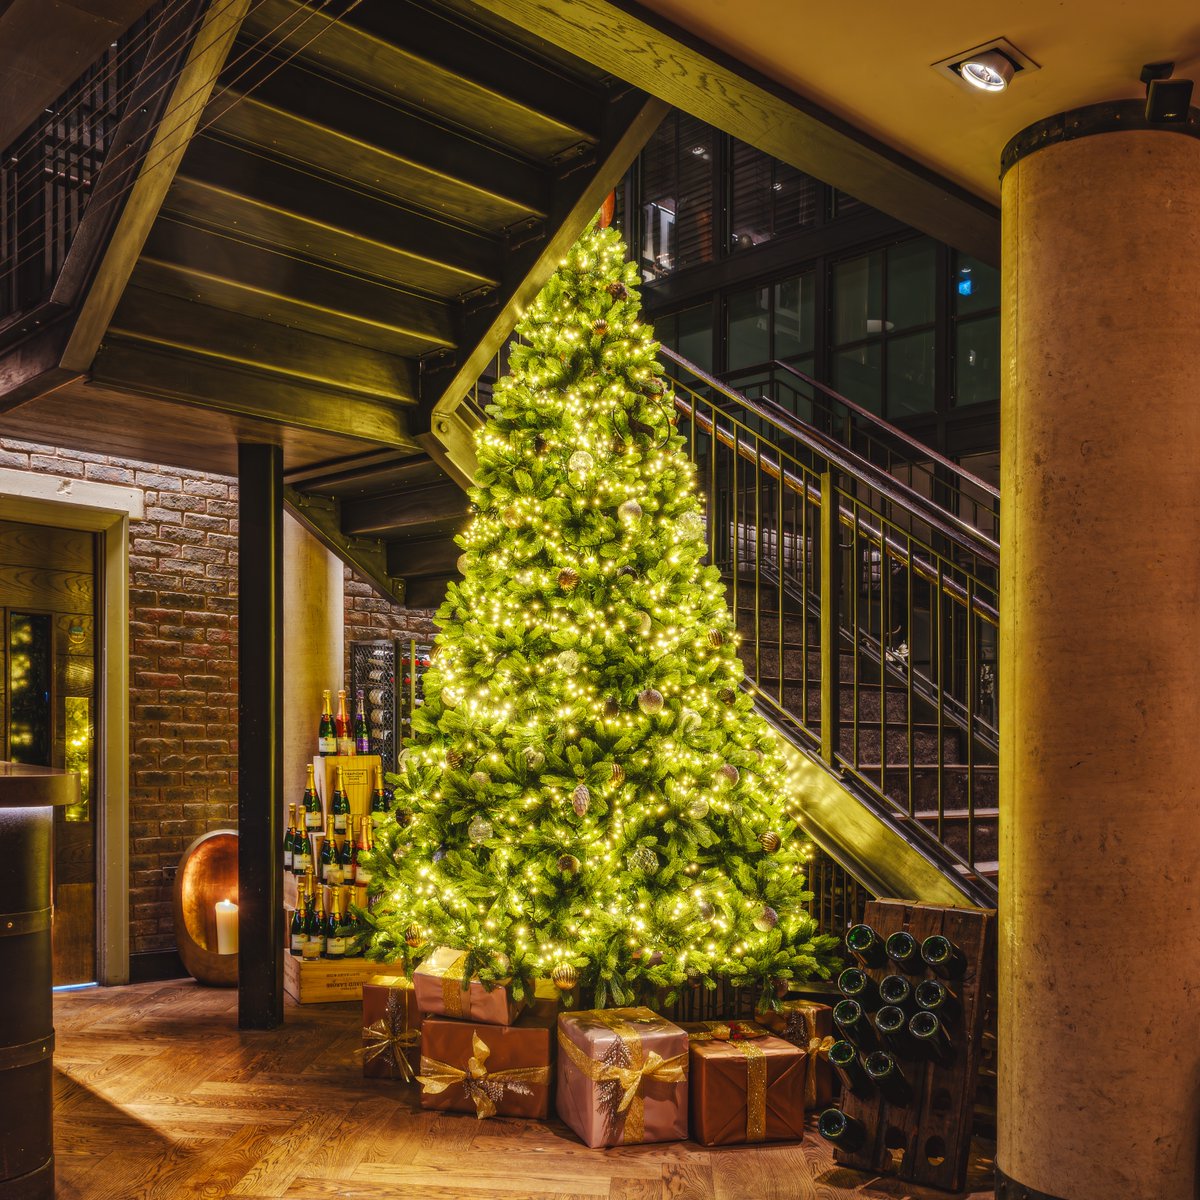 ⚠️ May cause Christmas tree envy ⚠️

#noplacelikedakota #lifeatdakota #dakotahotels #bestofyorkshire #luxuryhotels #luxurylifestyle #ukhotels #weekend #relax #suitelife #mornings #rest #bestofthebest